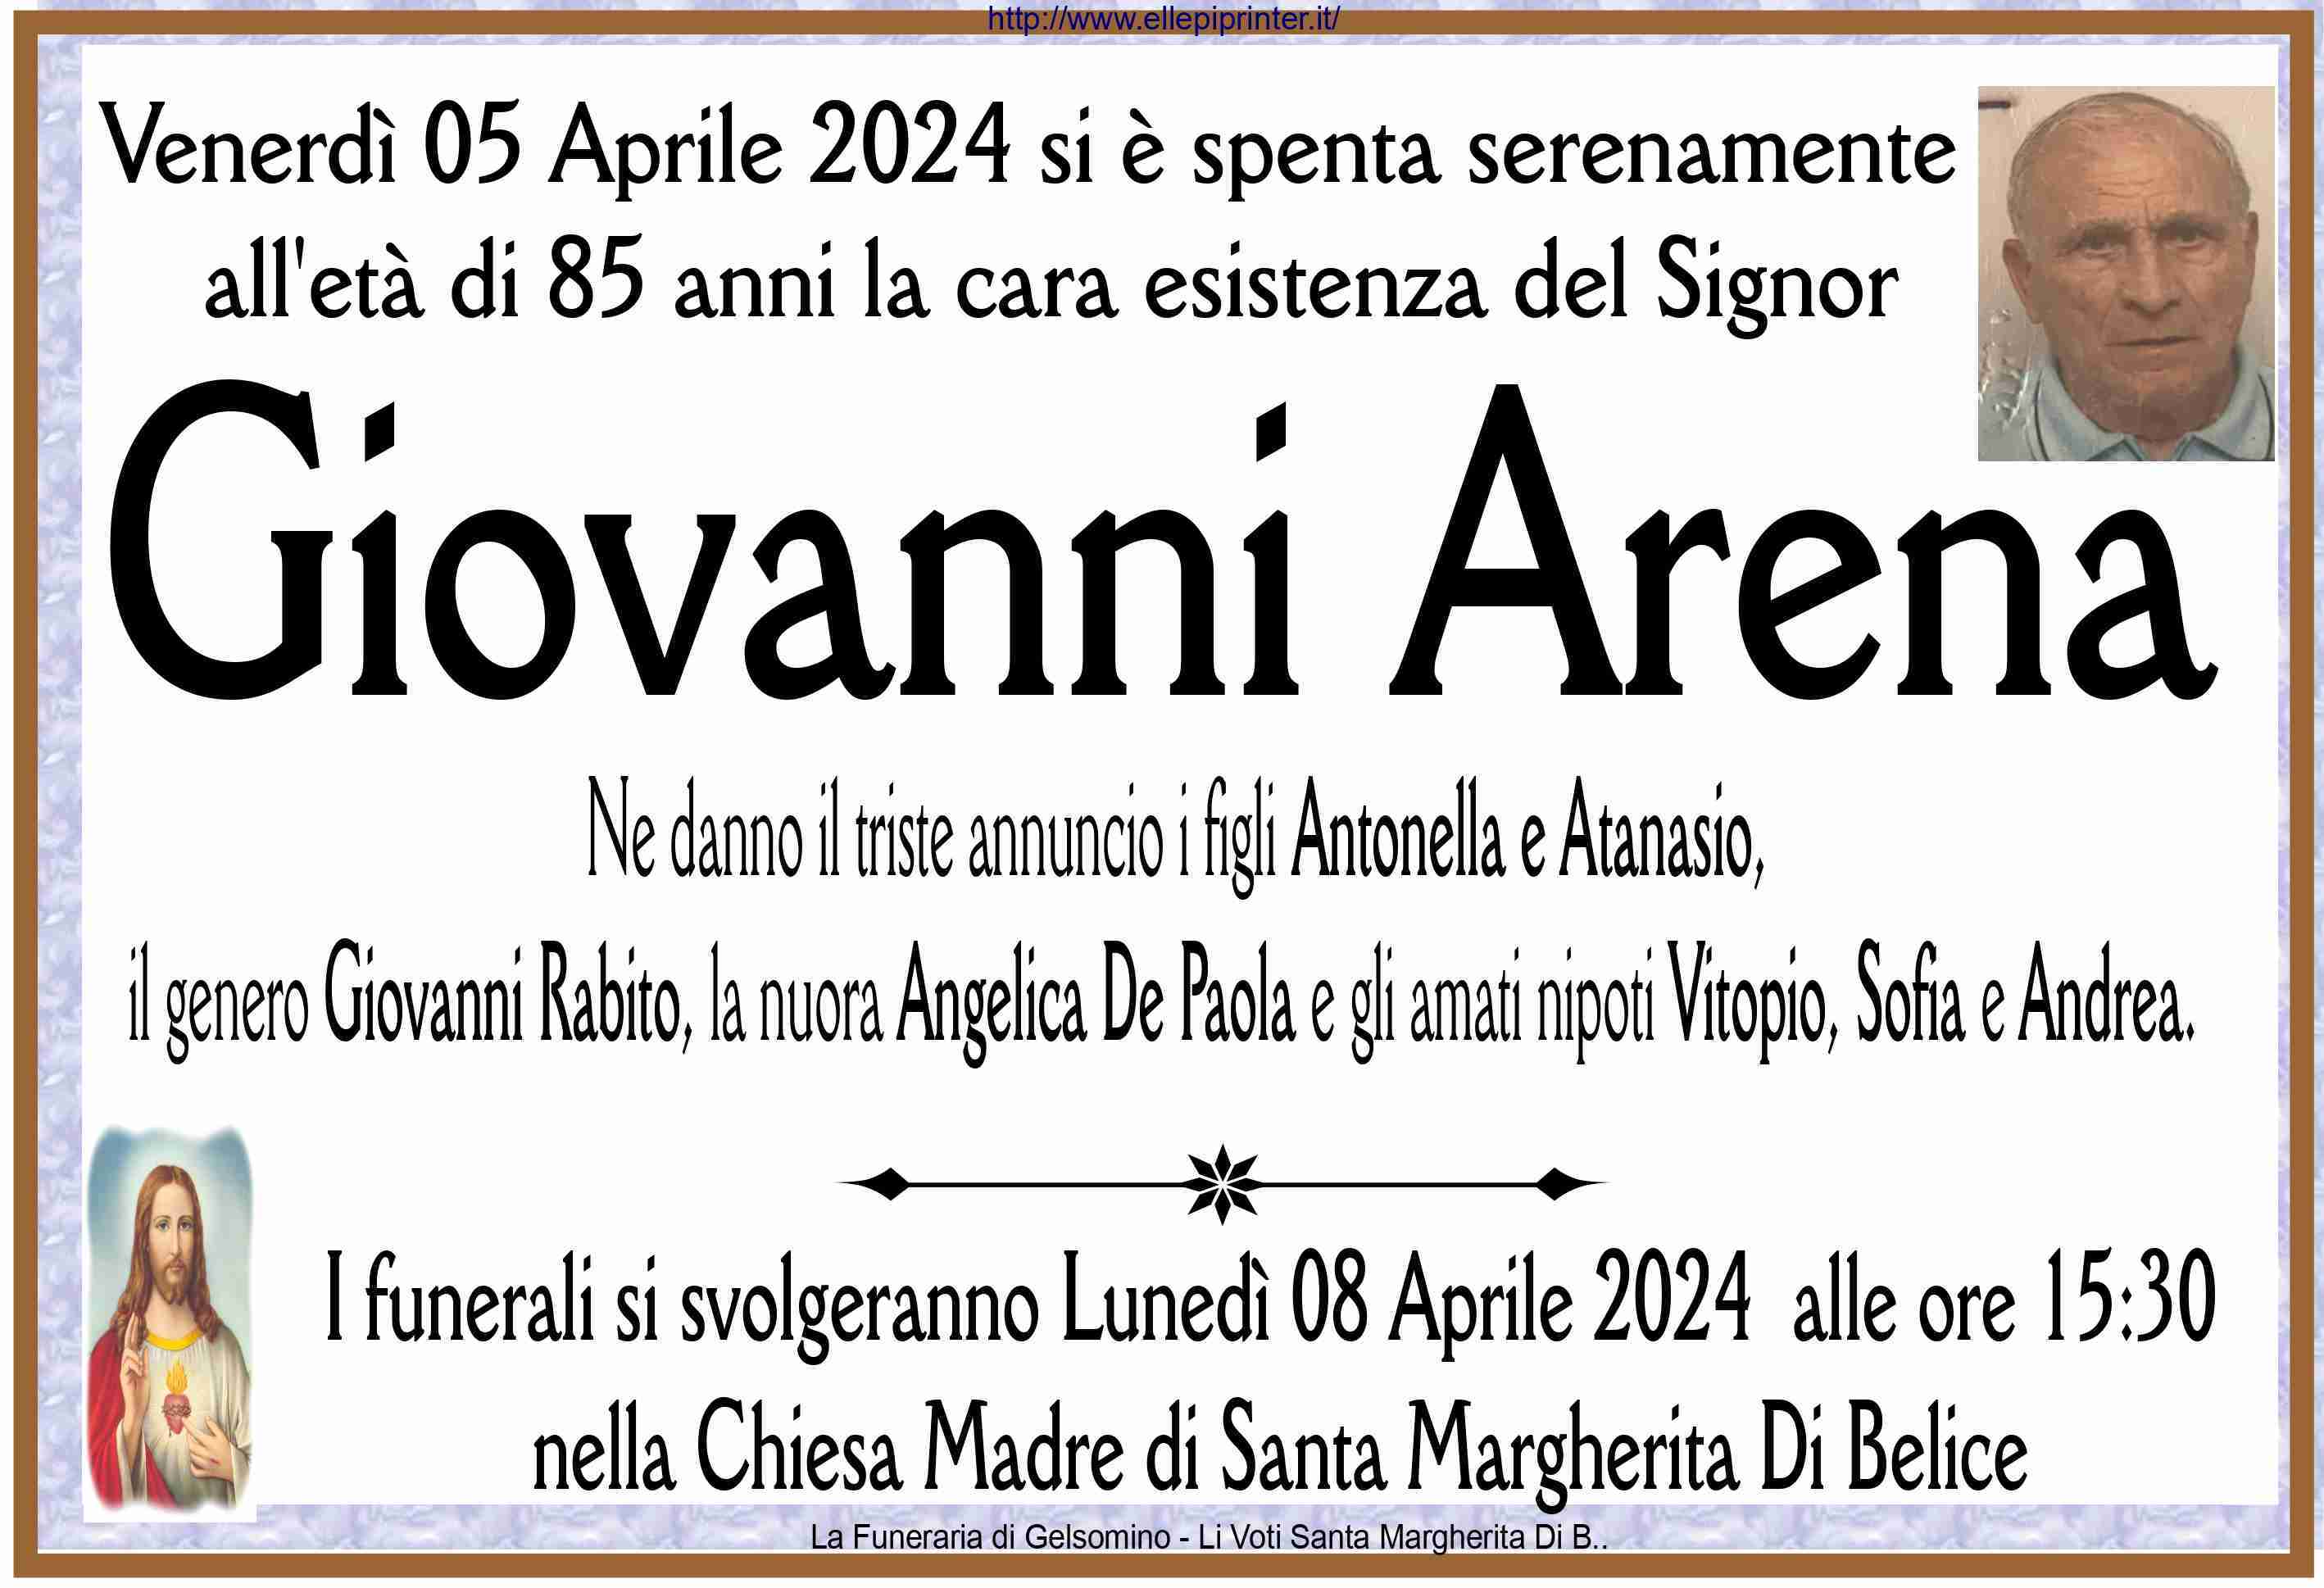 Giovanni Arena